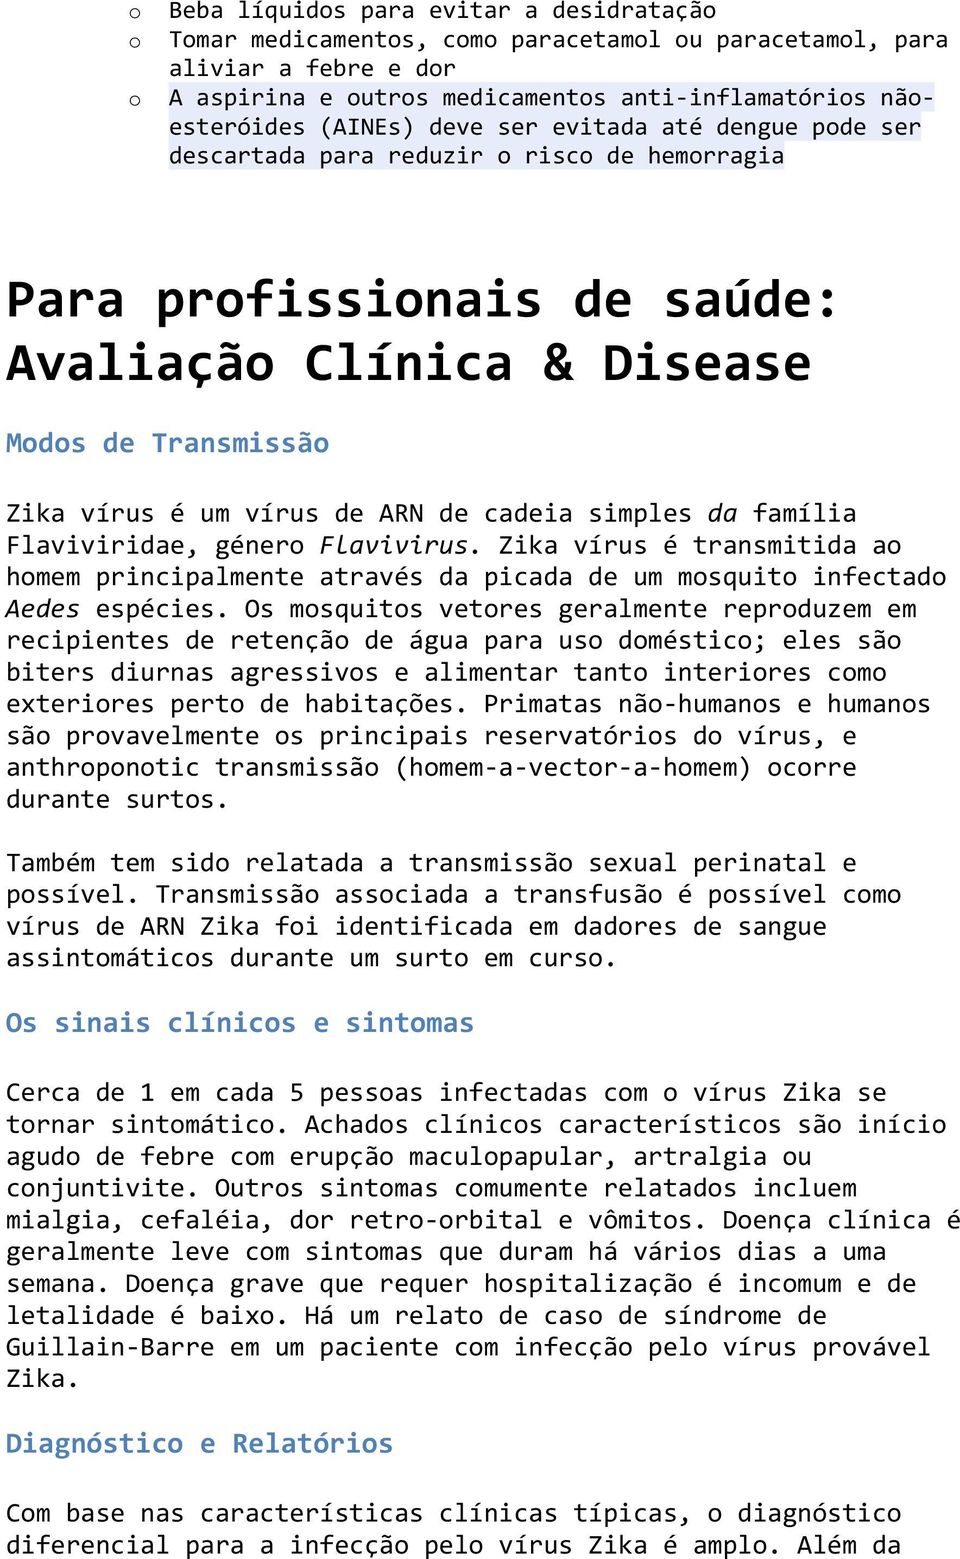 Flaviviridae, géner Flavivirus. Zika vírus é transmitida a hmem principalmente através da picada de um msquit infectad Aedes espécies.